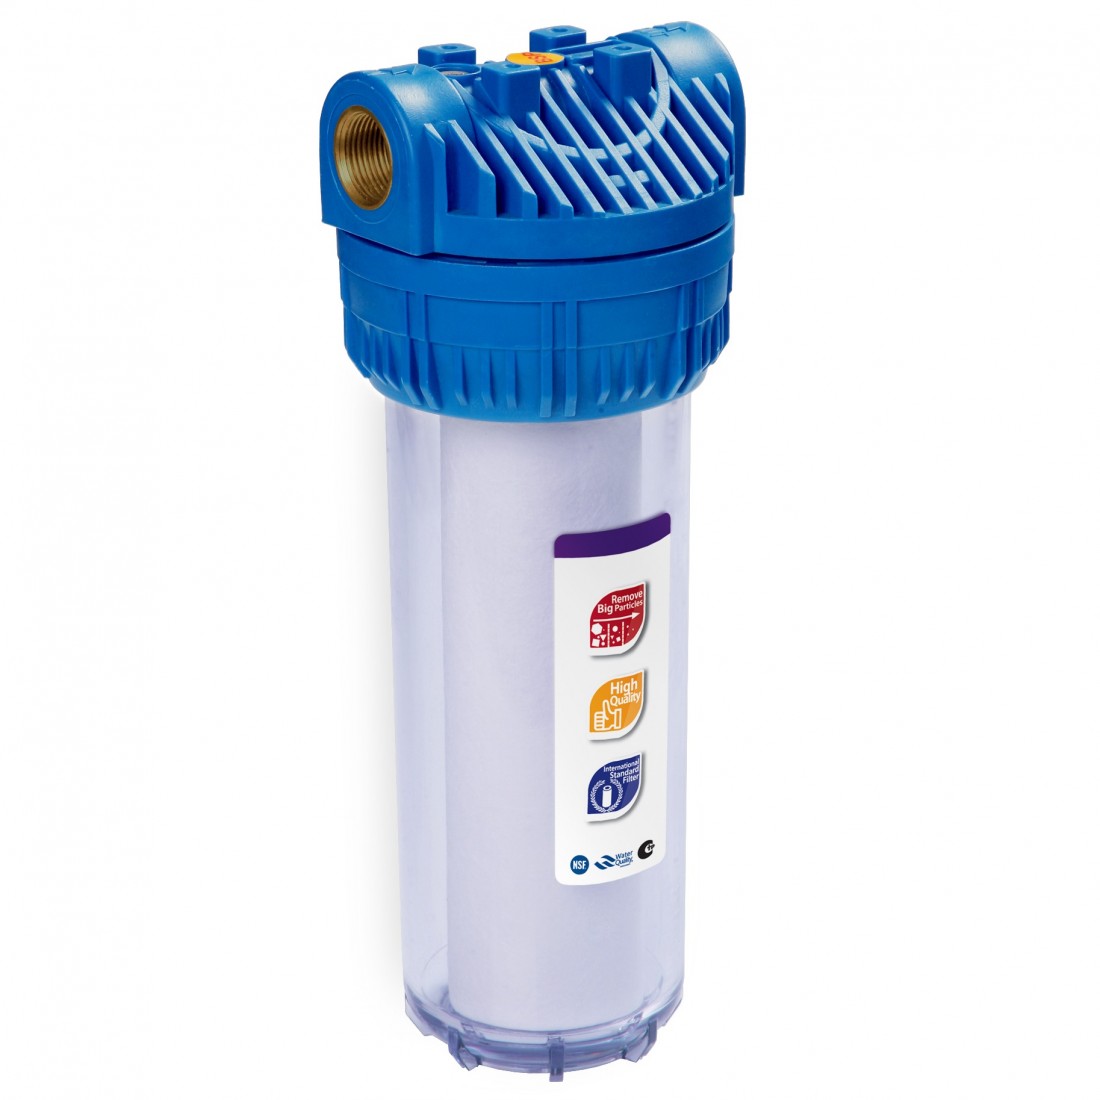 Продажа фильтров для воды. Фильтр магистральный RAIFIL ps897-bk1-PR-С. Корпус Aqua fp3 10" SL, 1/2". АБФ-10-12 магистральный фильтр. Фильтр магистральный для воды c889-b12-PR-BN RAIFIL.